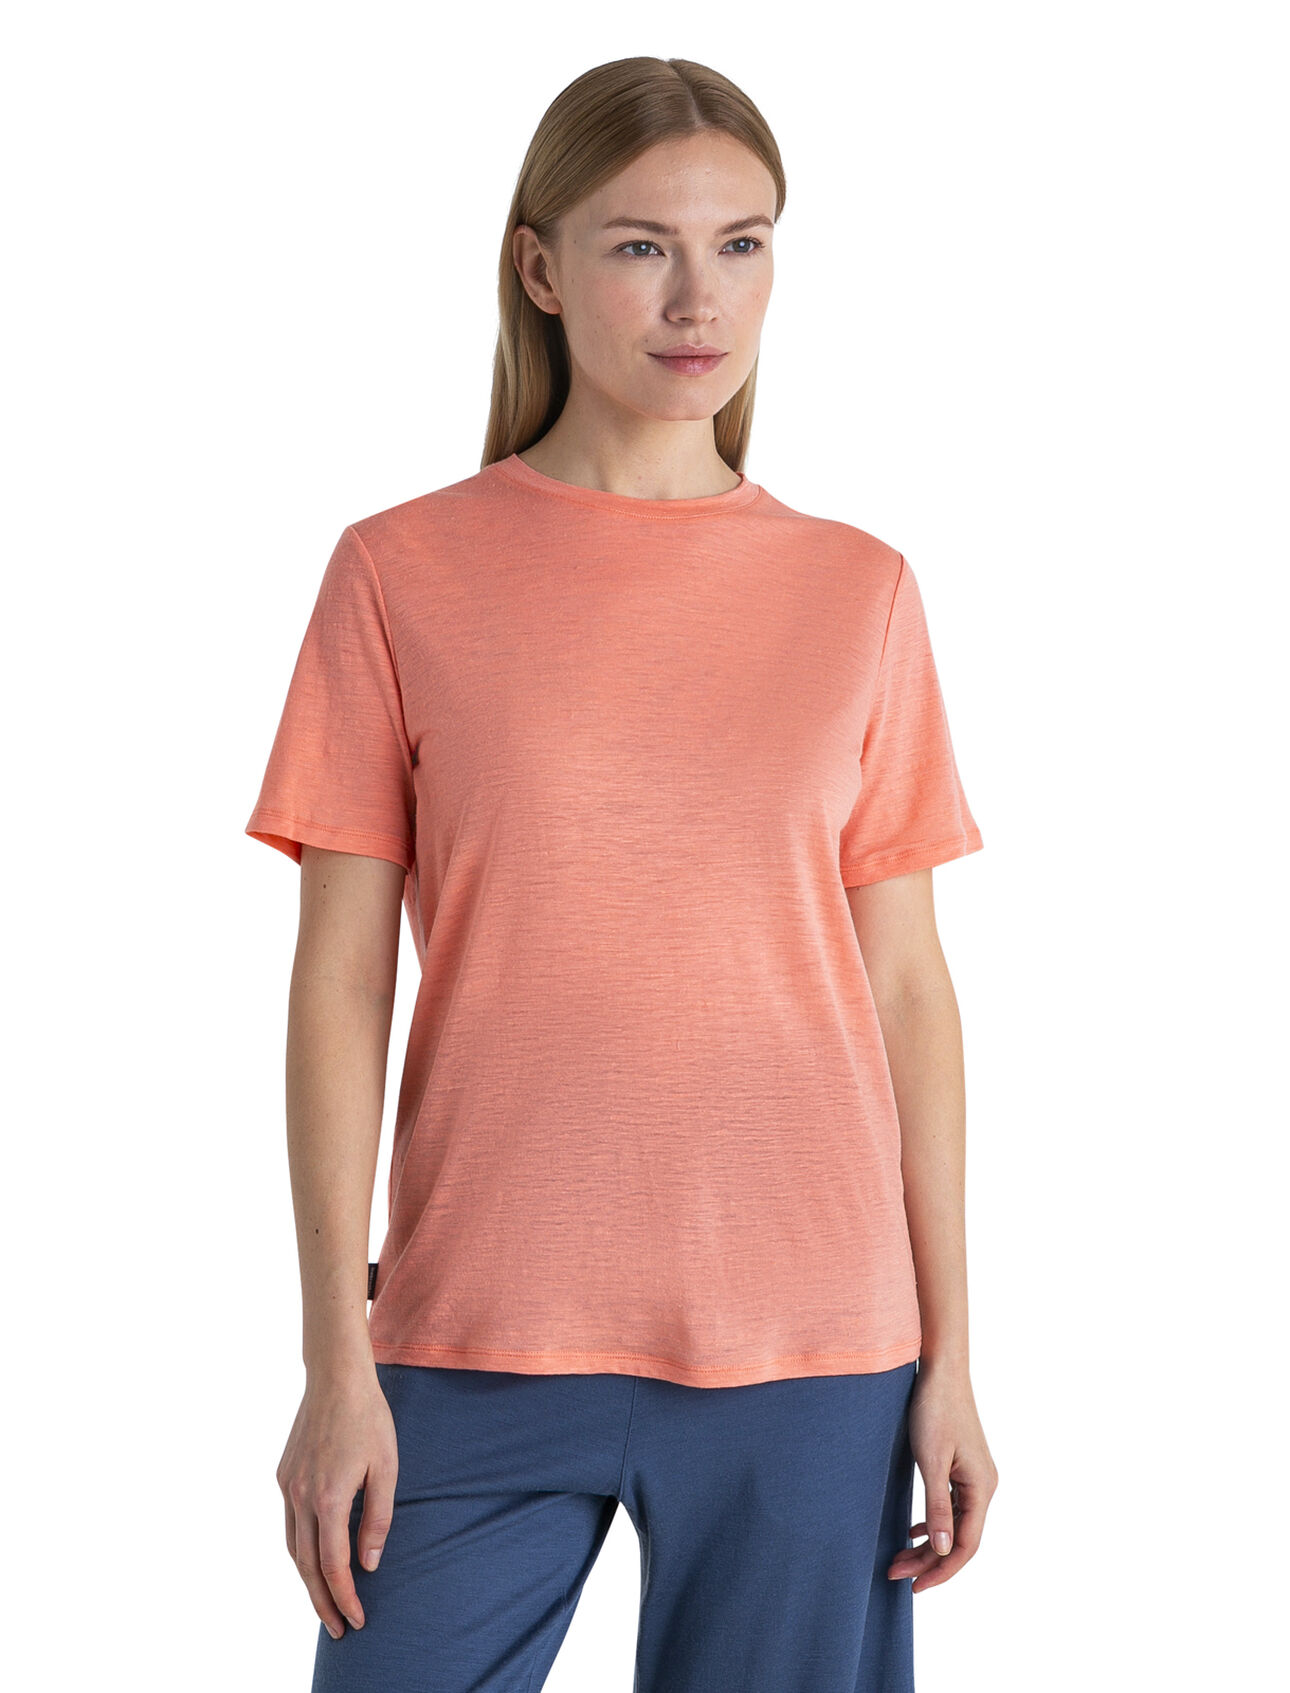 Merino Leinen T-Shirt Damen Ein leichtgewichtiges, kombinationsfreudiges T-Shirt aus einer weichen Mischung aus Merinowolle und Leinen, das Merino Leinen T-Shirt ist eine verlässliche Wahl für Komfort und Style. 